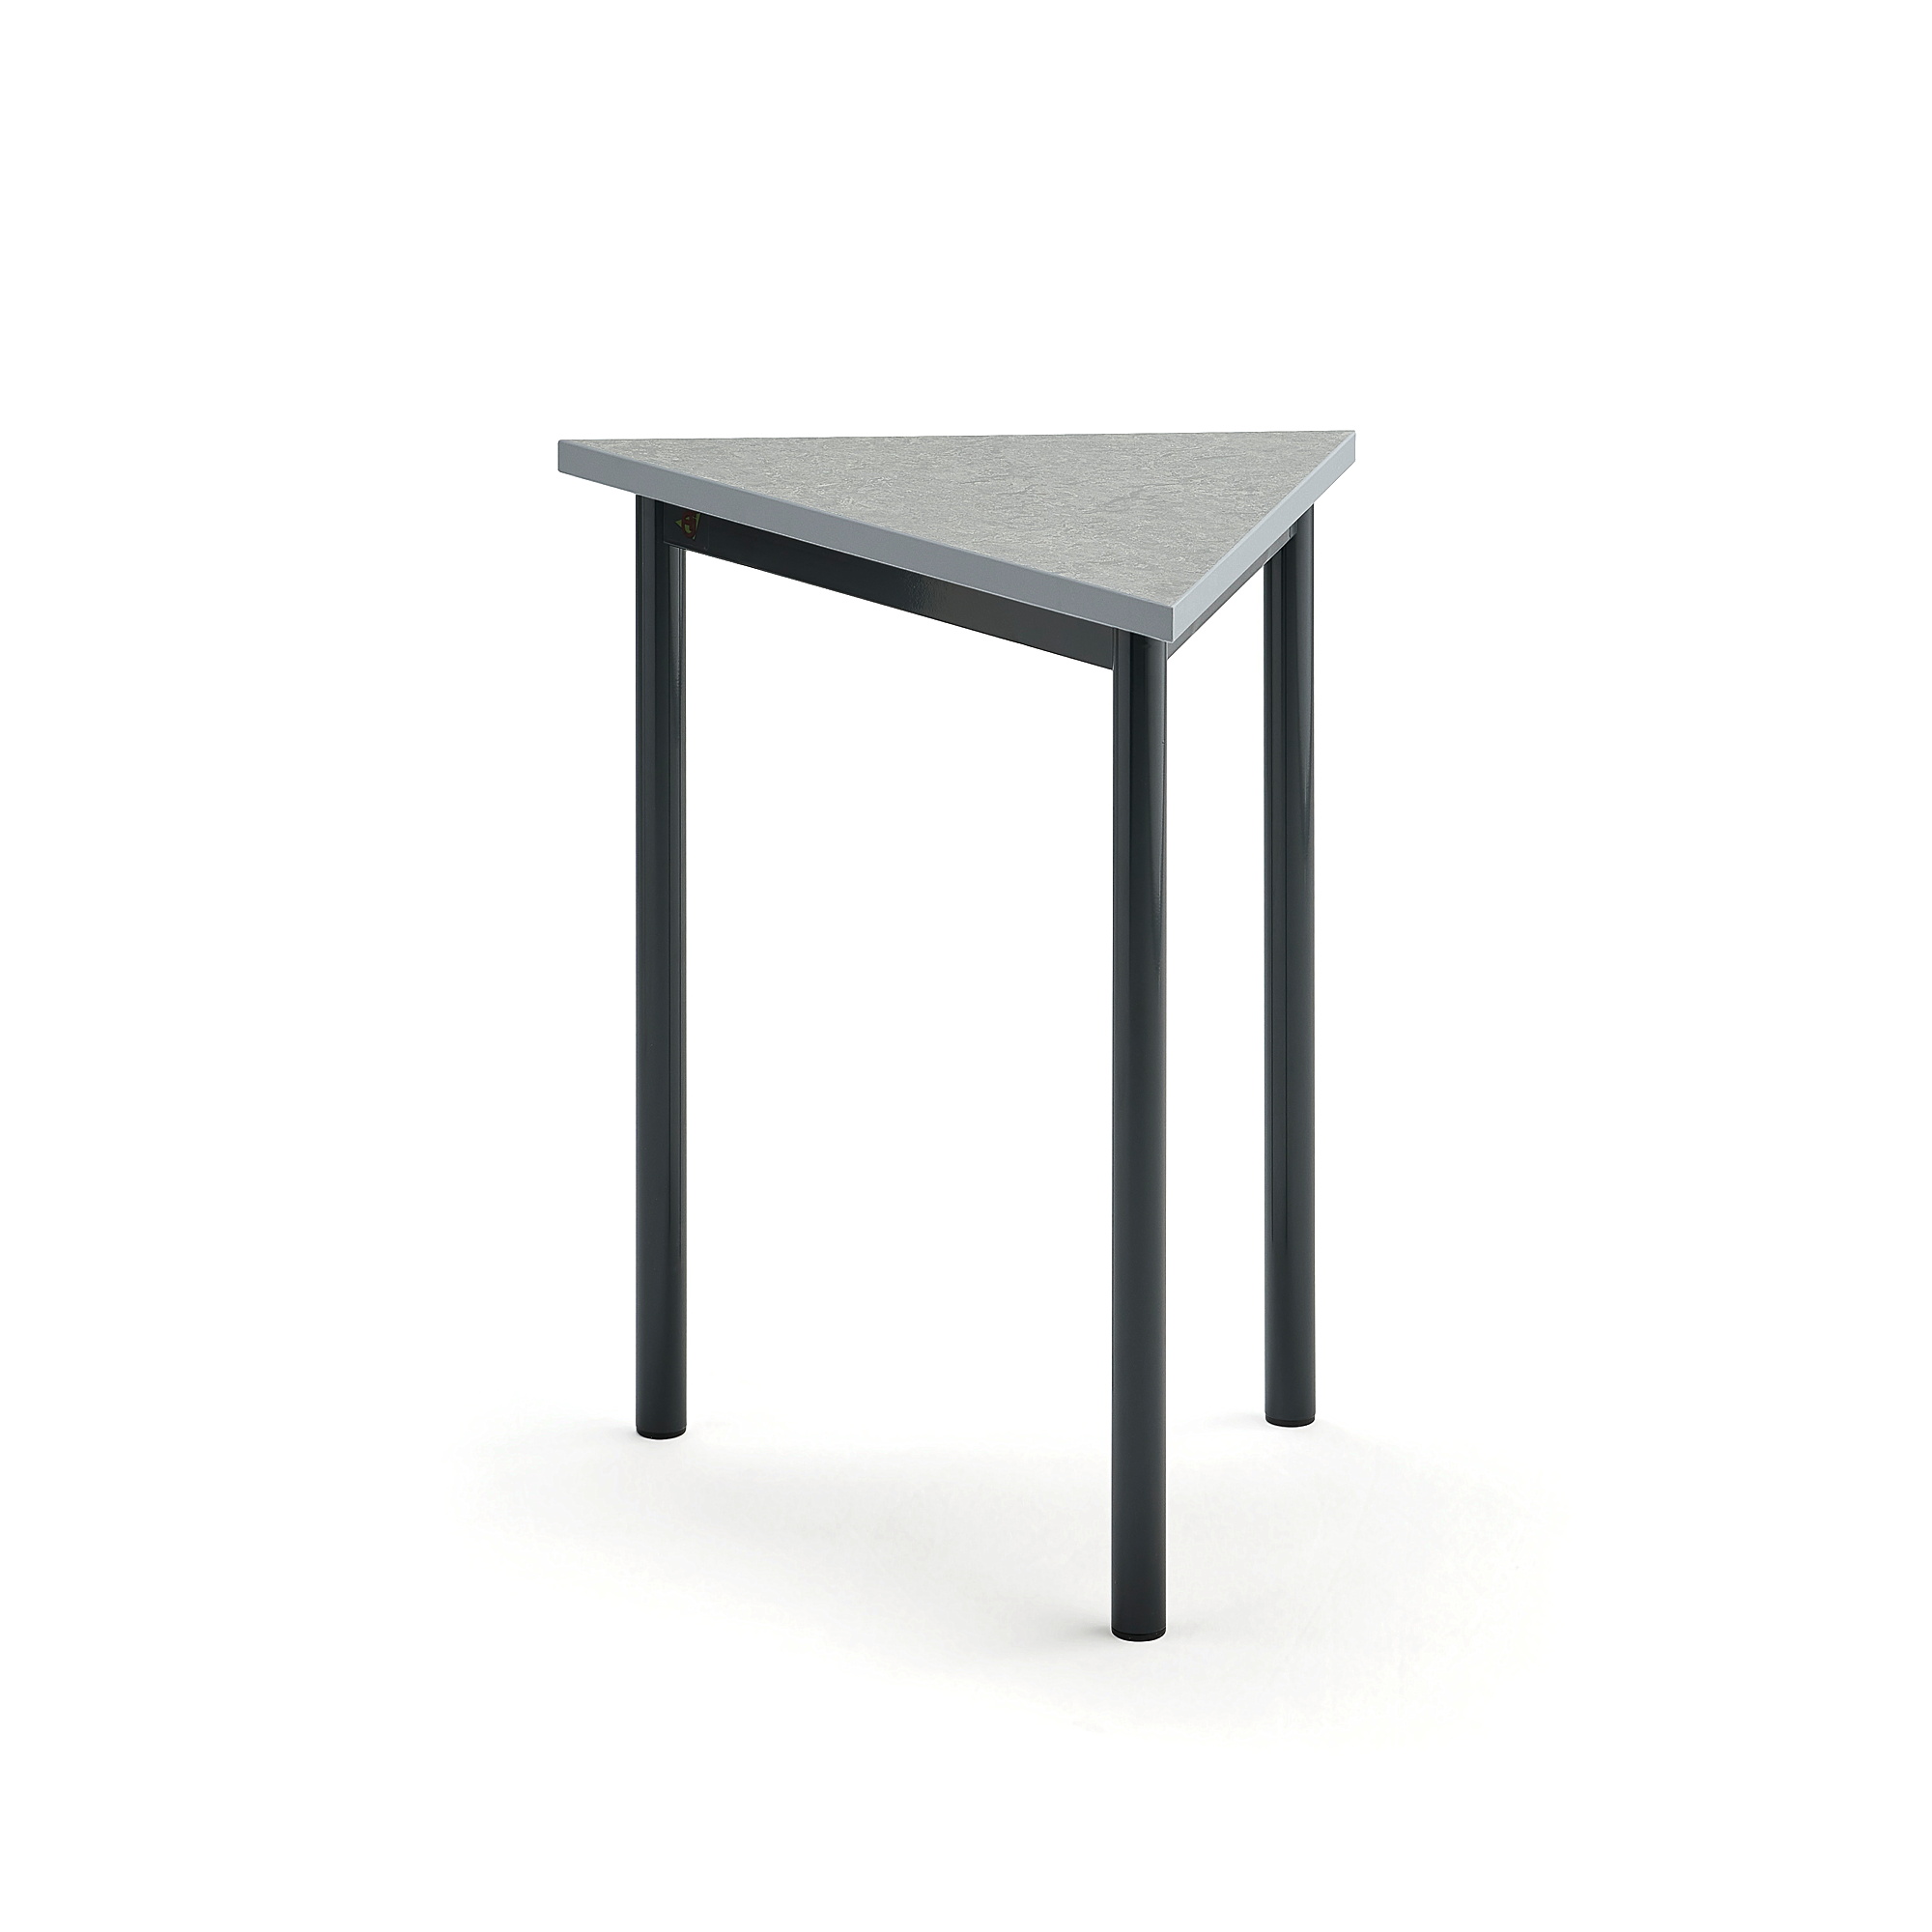 Stôl SONITUS TRIANGEL, 700x600x720 mm, linoleum - šedá, antracit